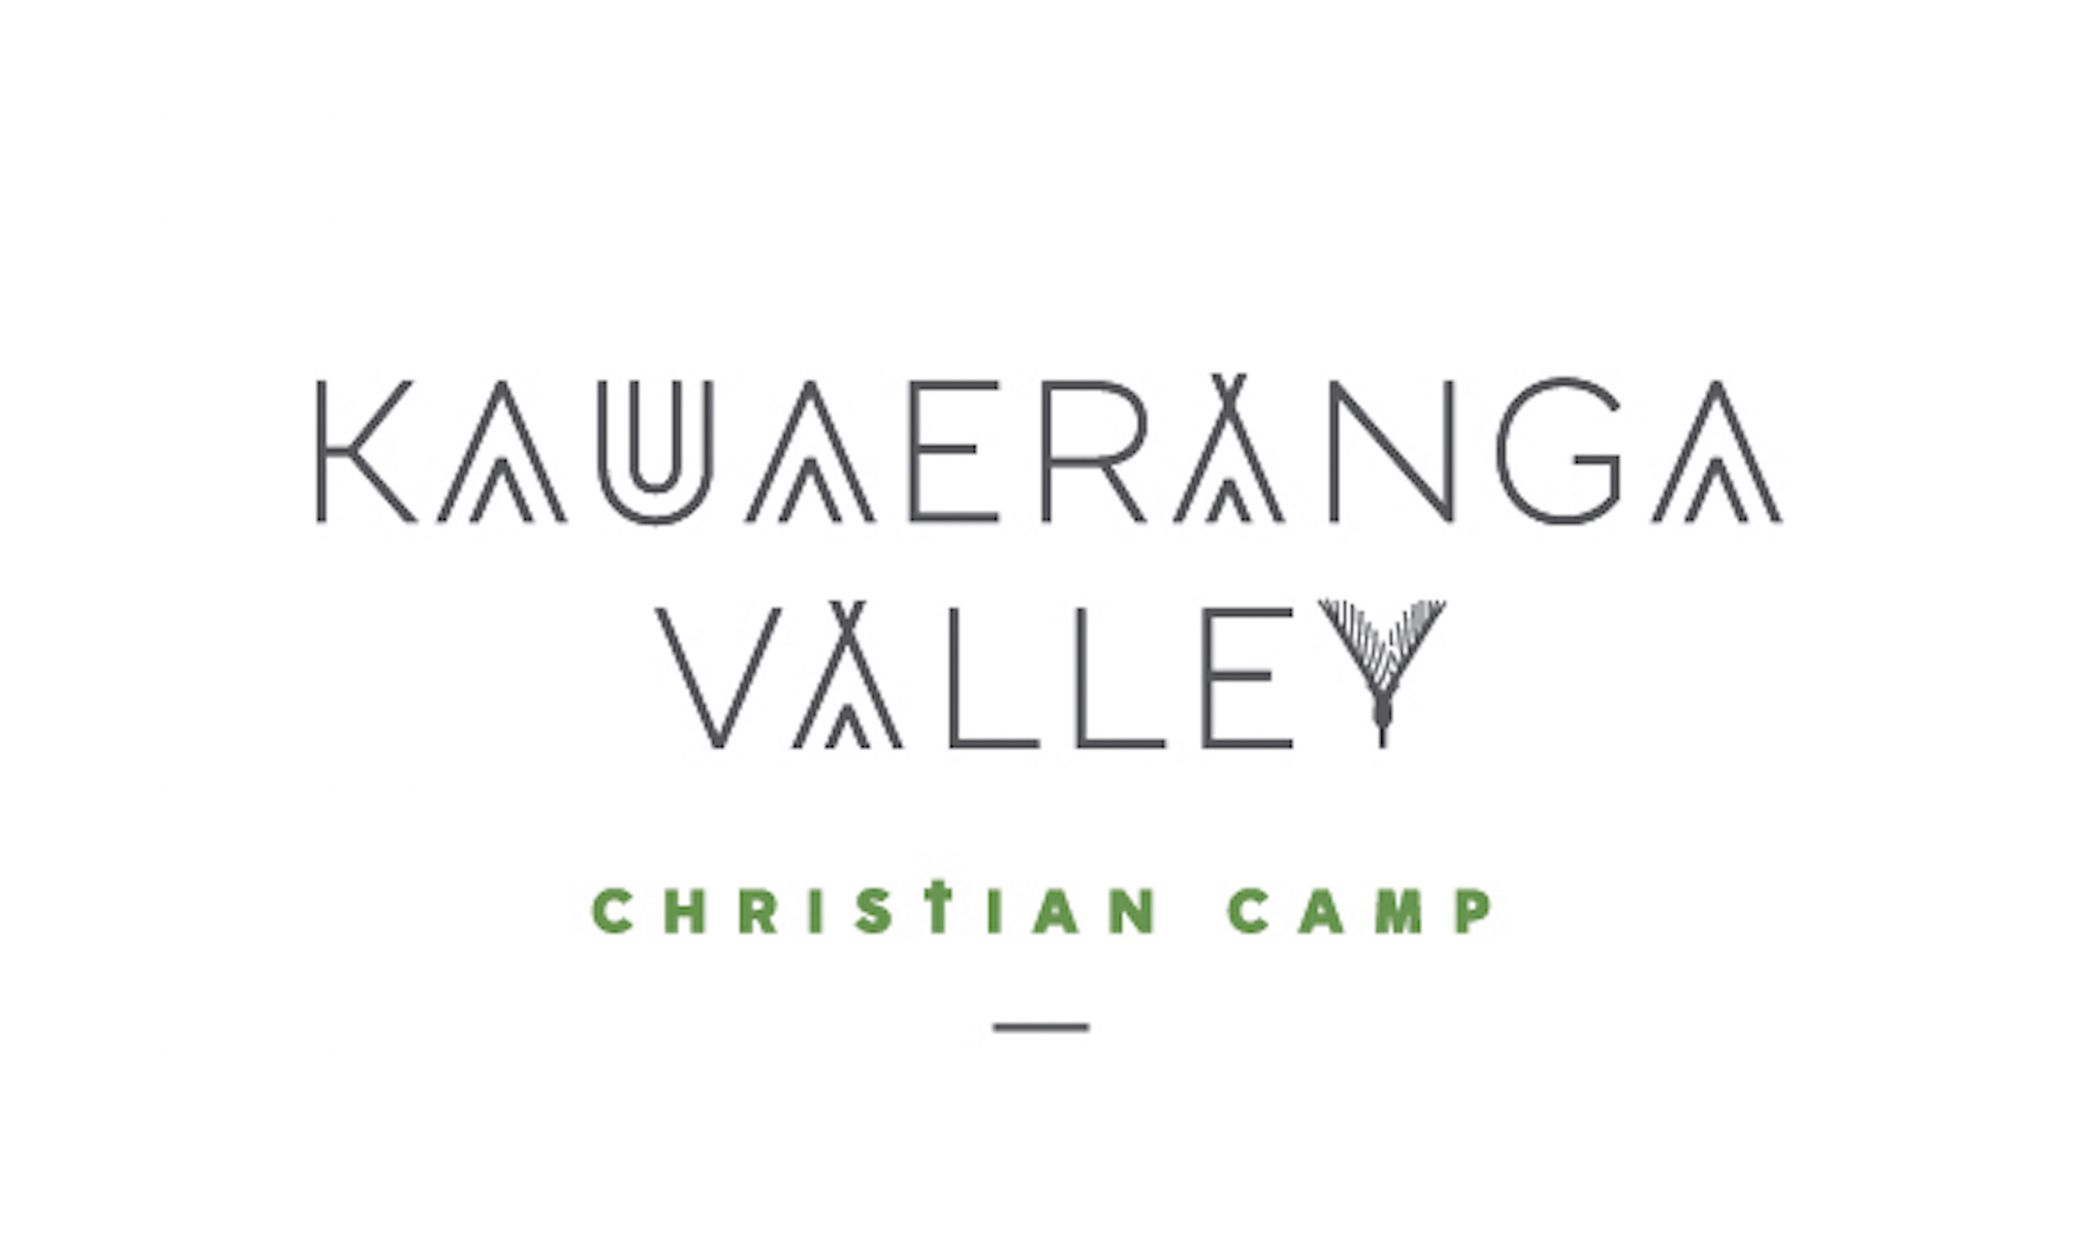 Kauaeranga Valley Christian Camp